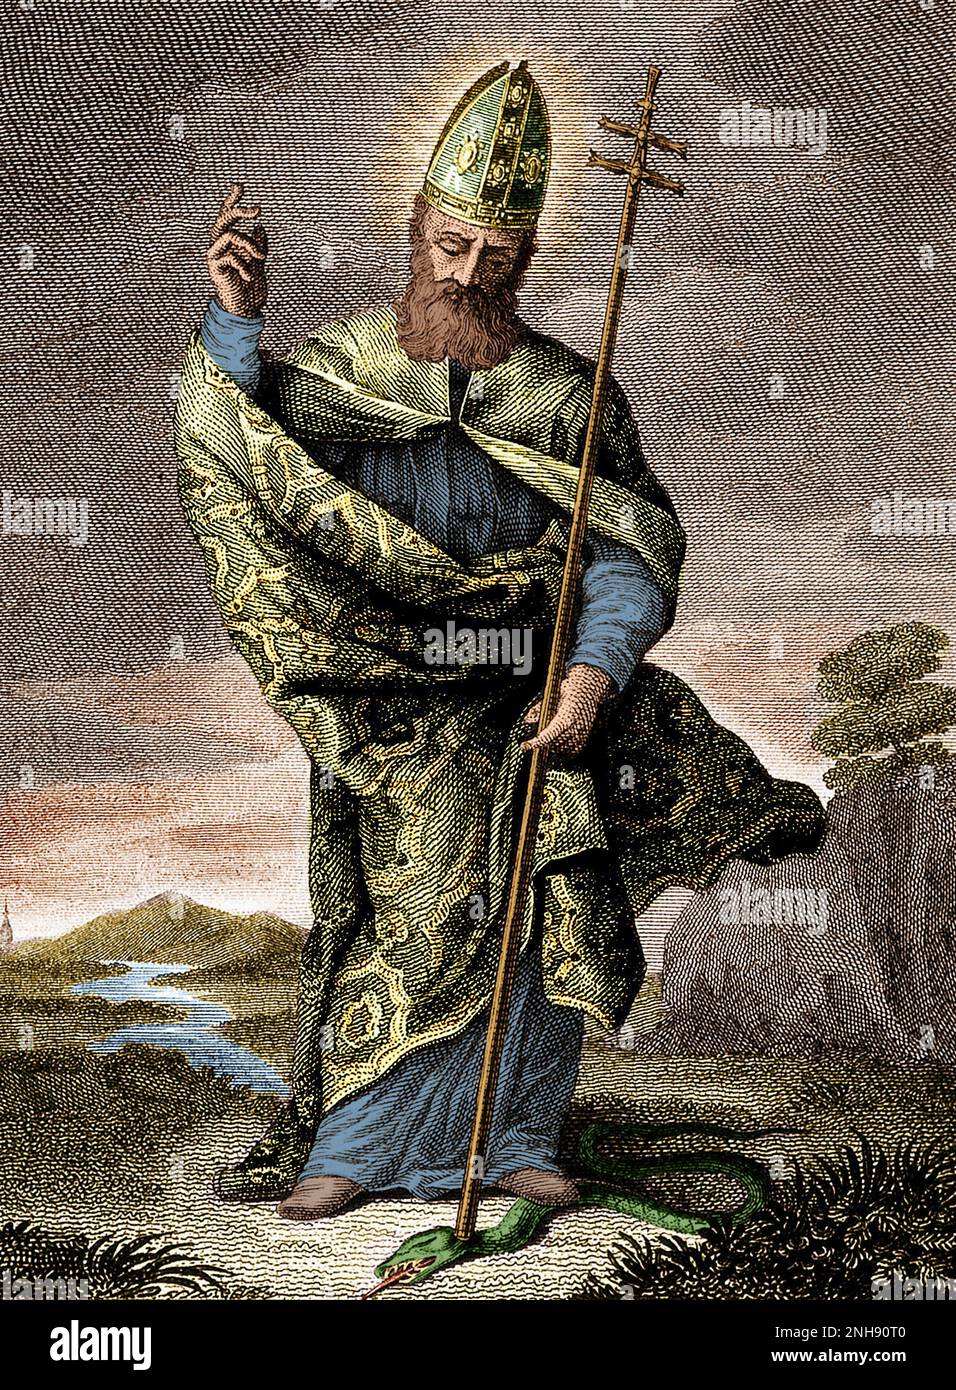 San Patrizio era un missionario e vescovo cristiano romano-britannico del V secolo in Irlanda. È il primo patrono d'Irlanda. Incisione di Edward Francis finden, 1815. Colorato Foto Stock